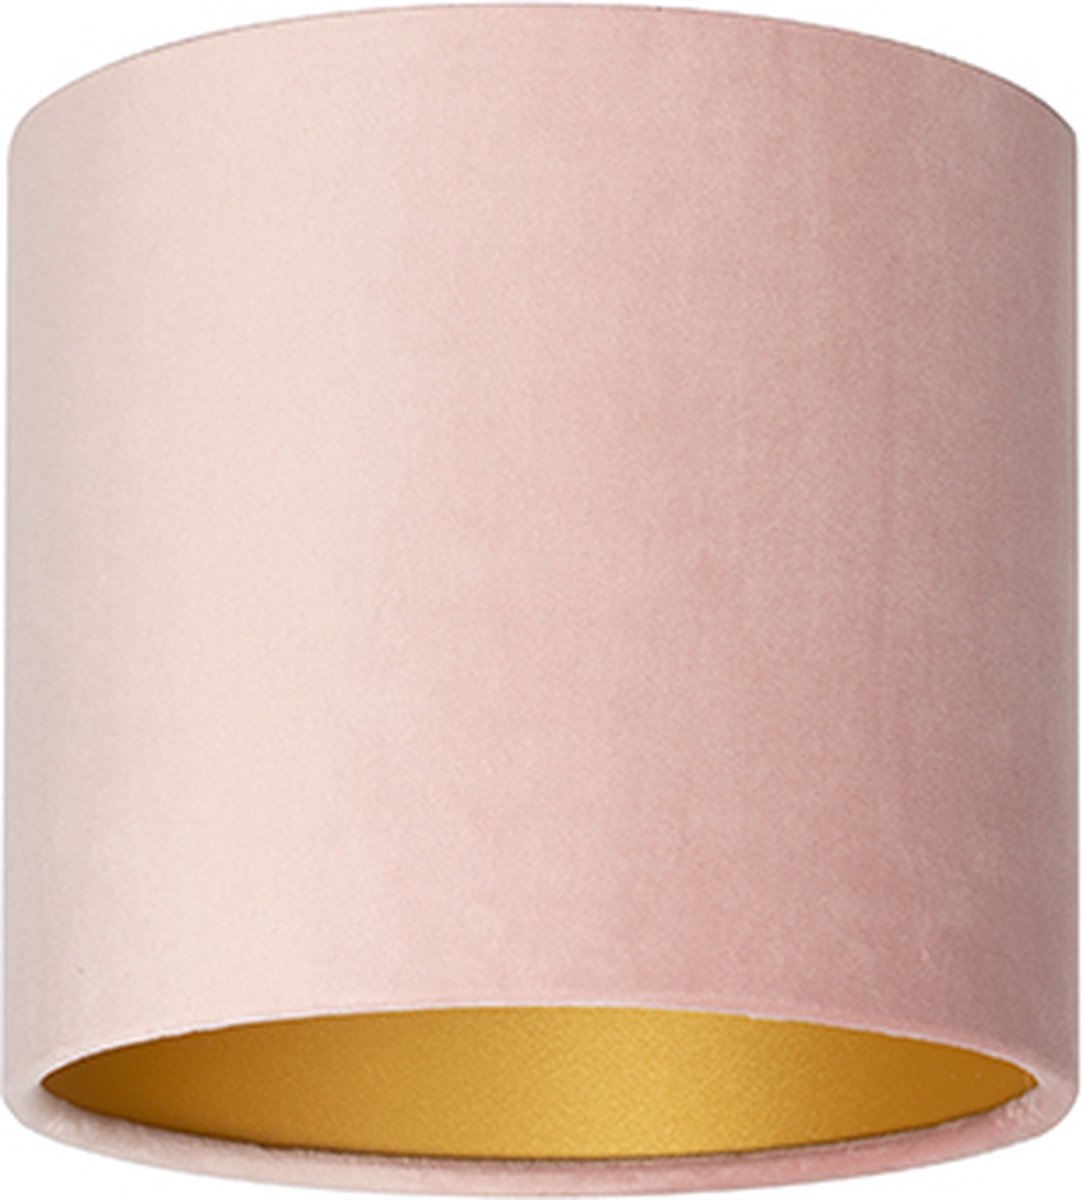 Uniqq Lampenkap velours roze Ø 20 cm - 20 cm hoog